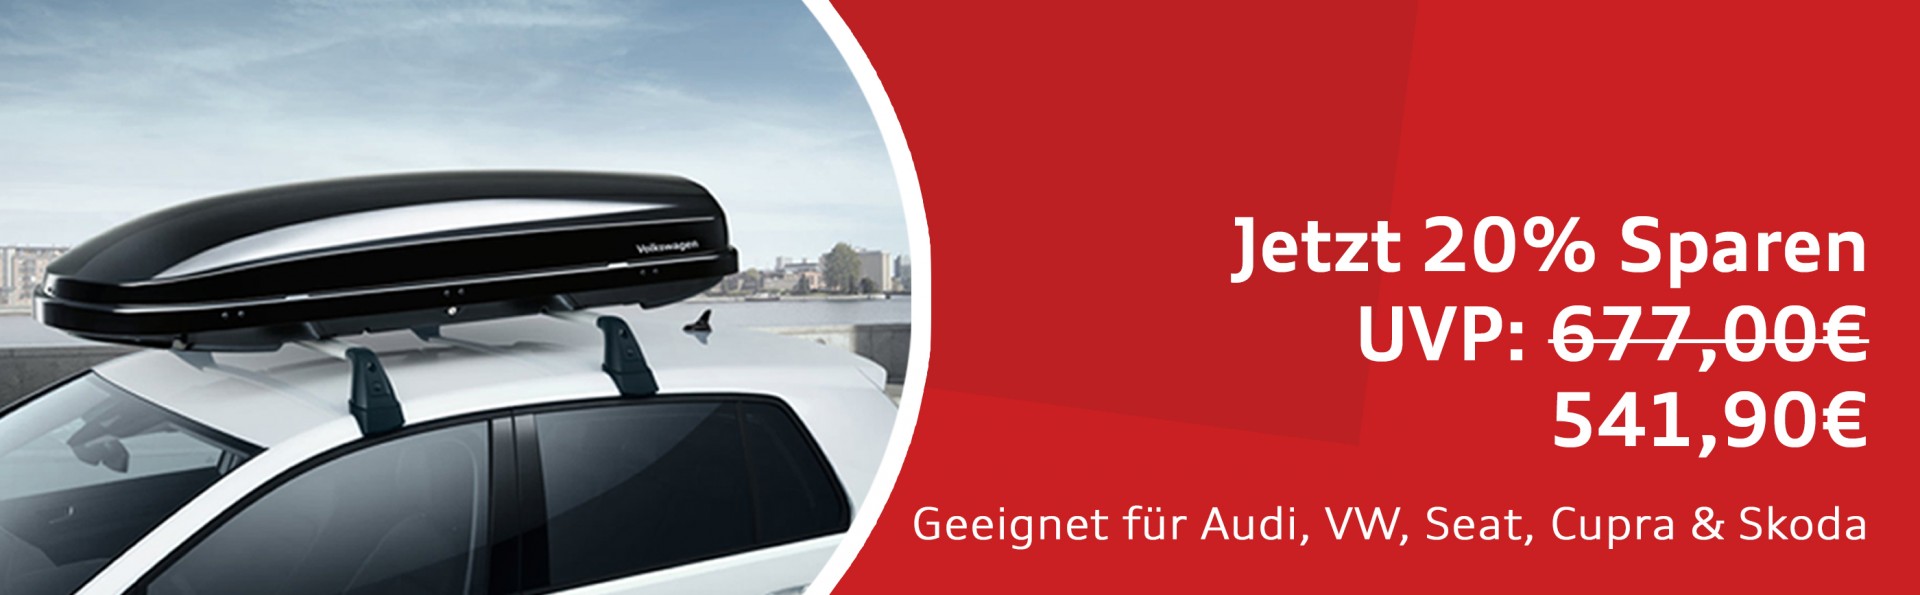 Audi Shop: schneller Versand für alle Audi, VW, SEAT und Skoda Produkte -  Audi Zentrum Ingolstadt